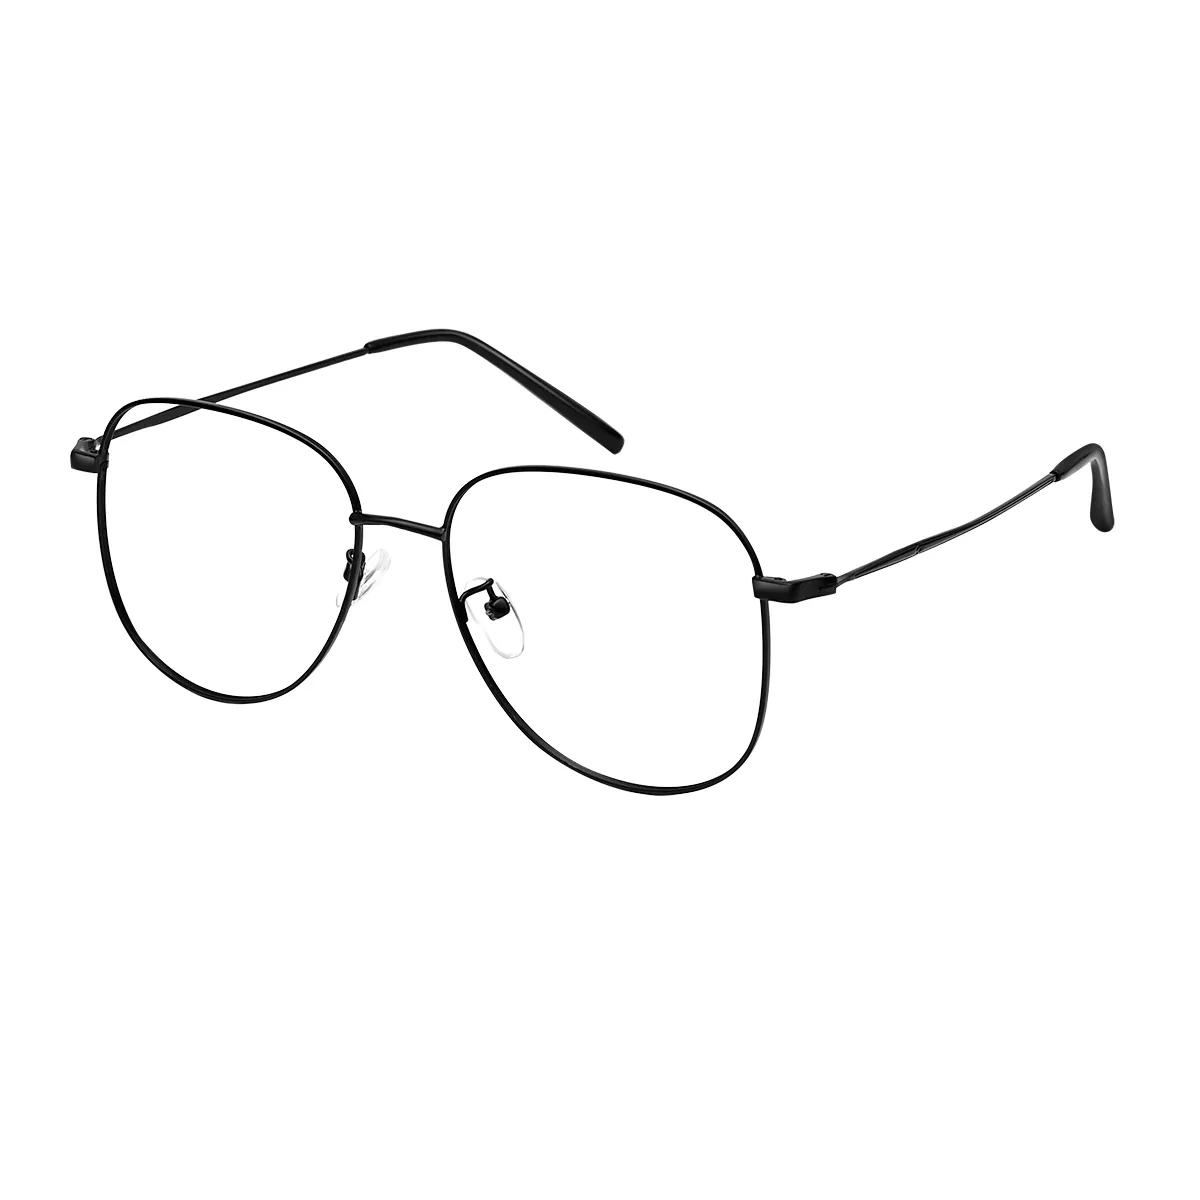 Tobias - Aviator Black Glasses for Men & Women